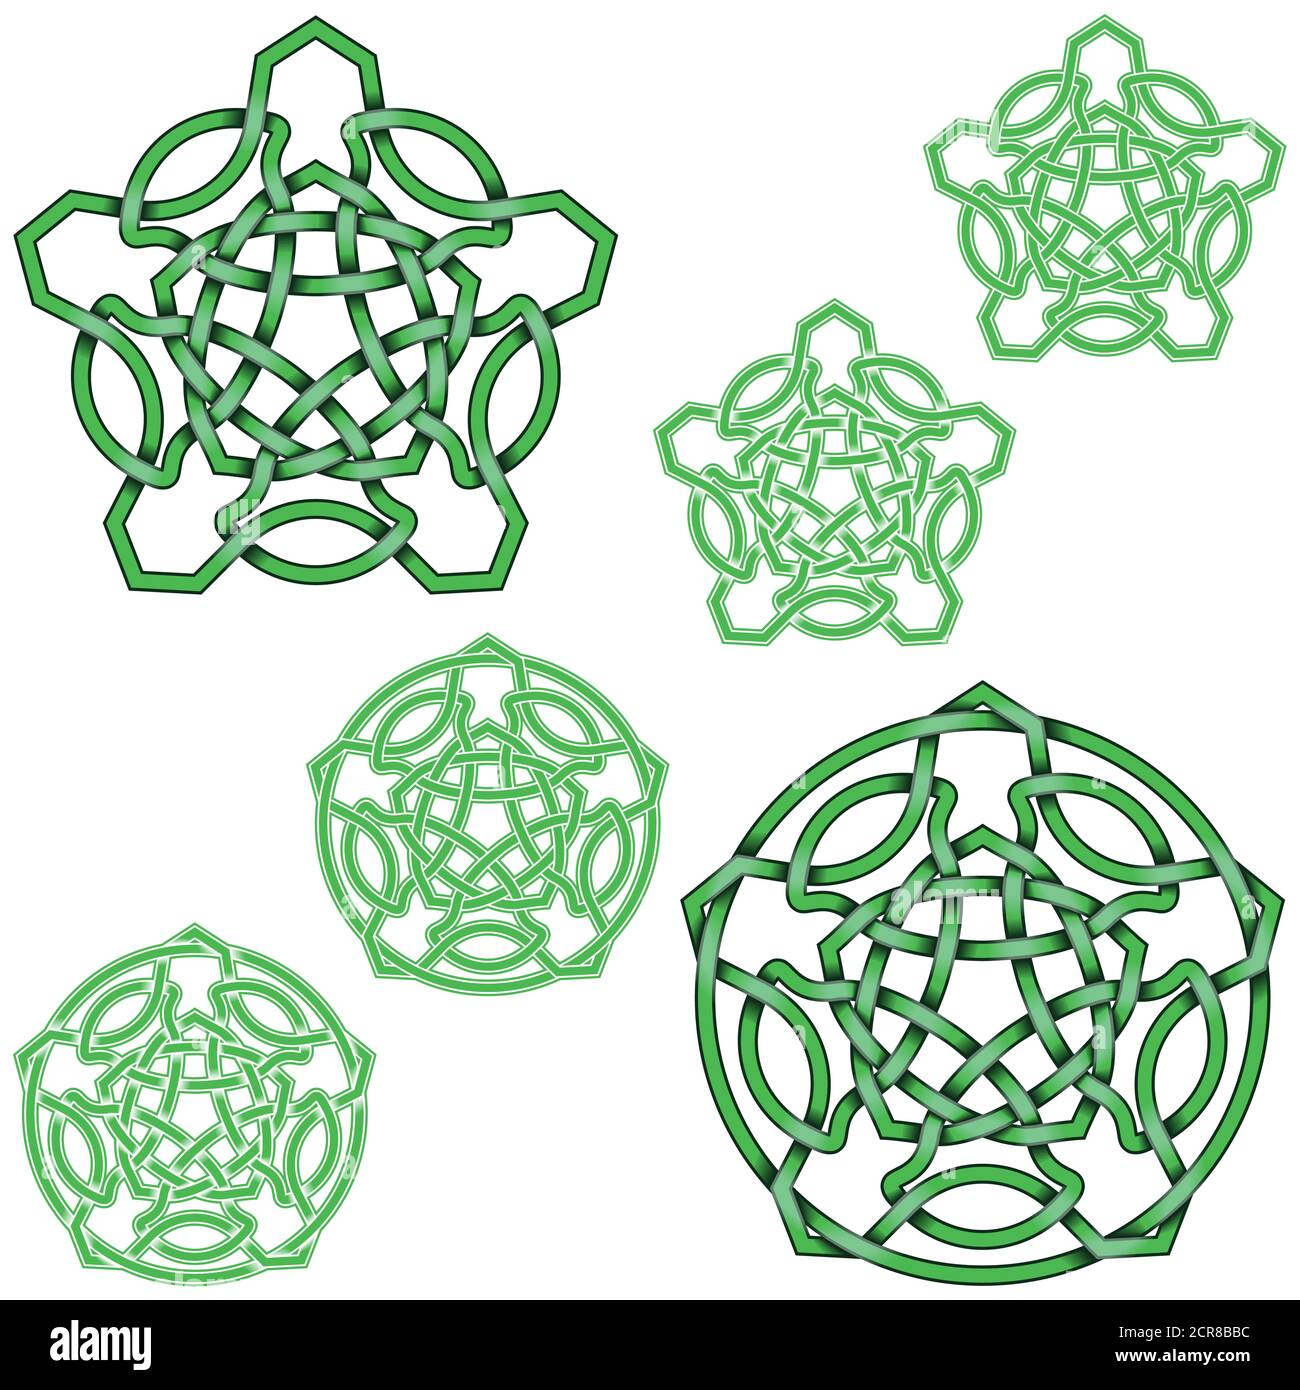 Illustration vectorielle d'étoiles à cinq pointes entrelacés dans le style celtique entouré d'un cercle, facile à éditer et à changer de couleur, le tout sur fond blanc. Illustration de Vecteur